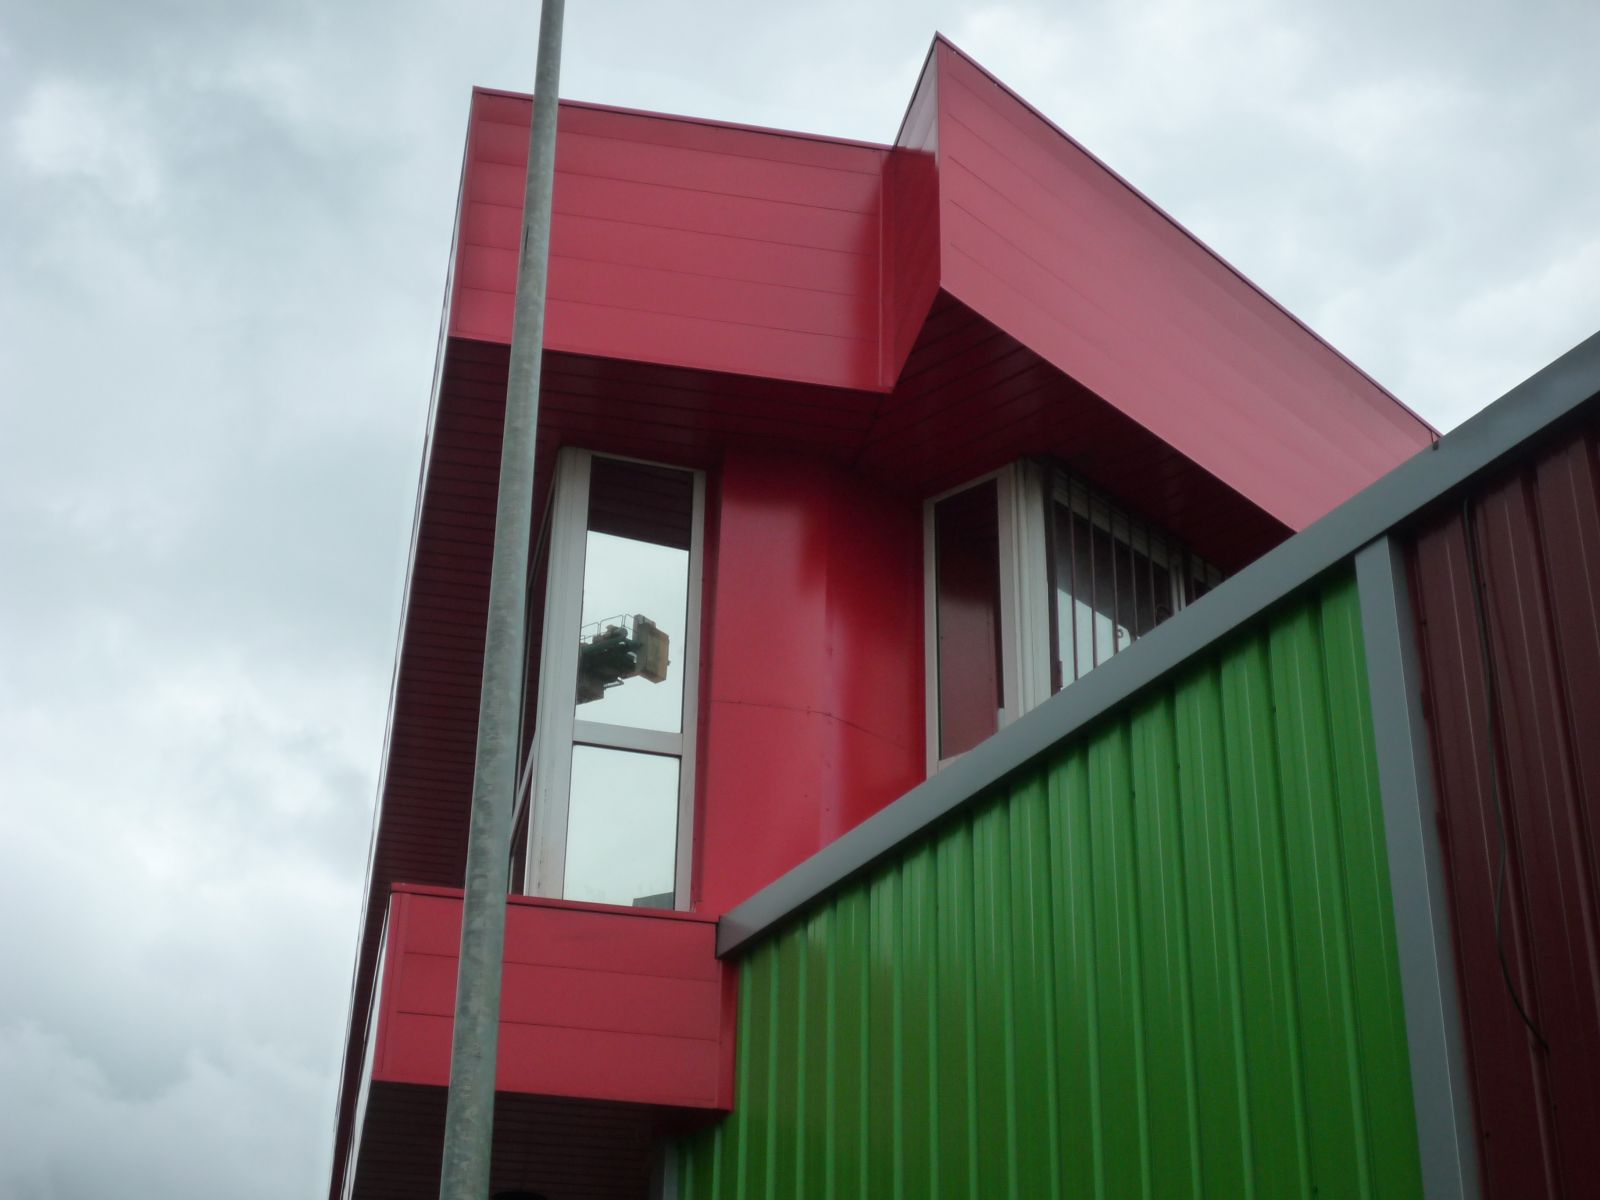 Detalle de fachada con falso techo con bandeja INCOBENDS Daezl, en la fundicin de Fumbarri en color rojo teja por INCOPERFIL